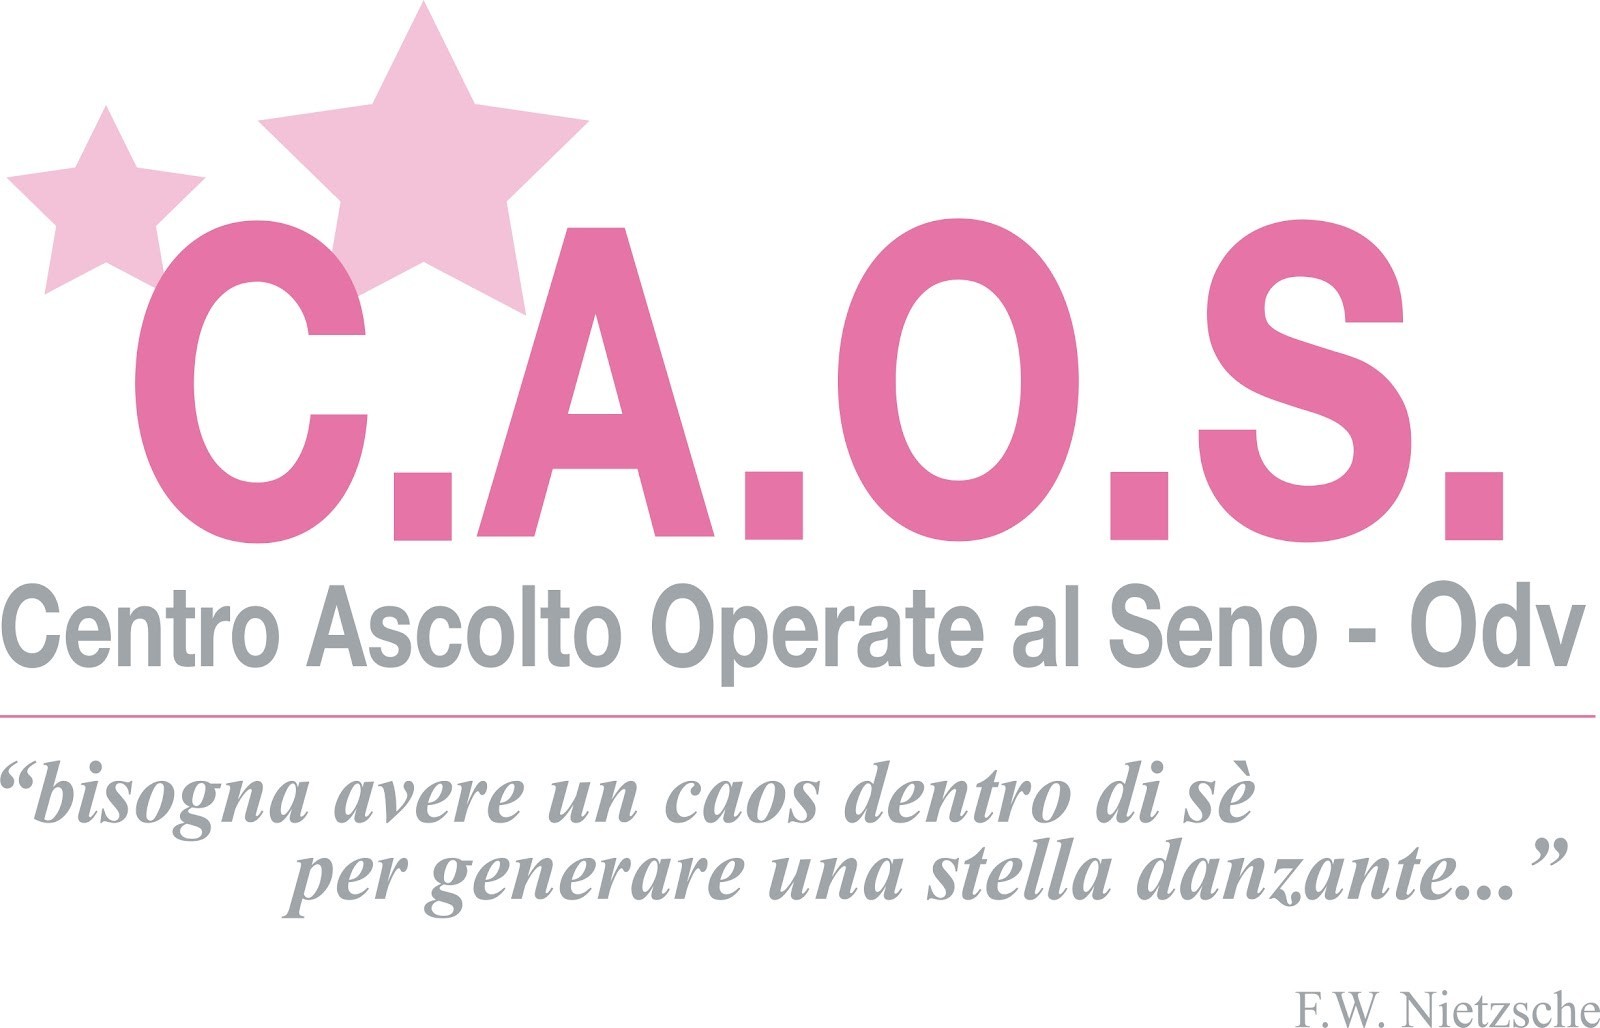 Associazione C.A.O.S. Centro Ascolto Operate al Seno